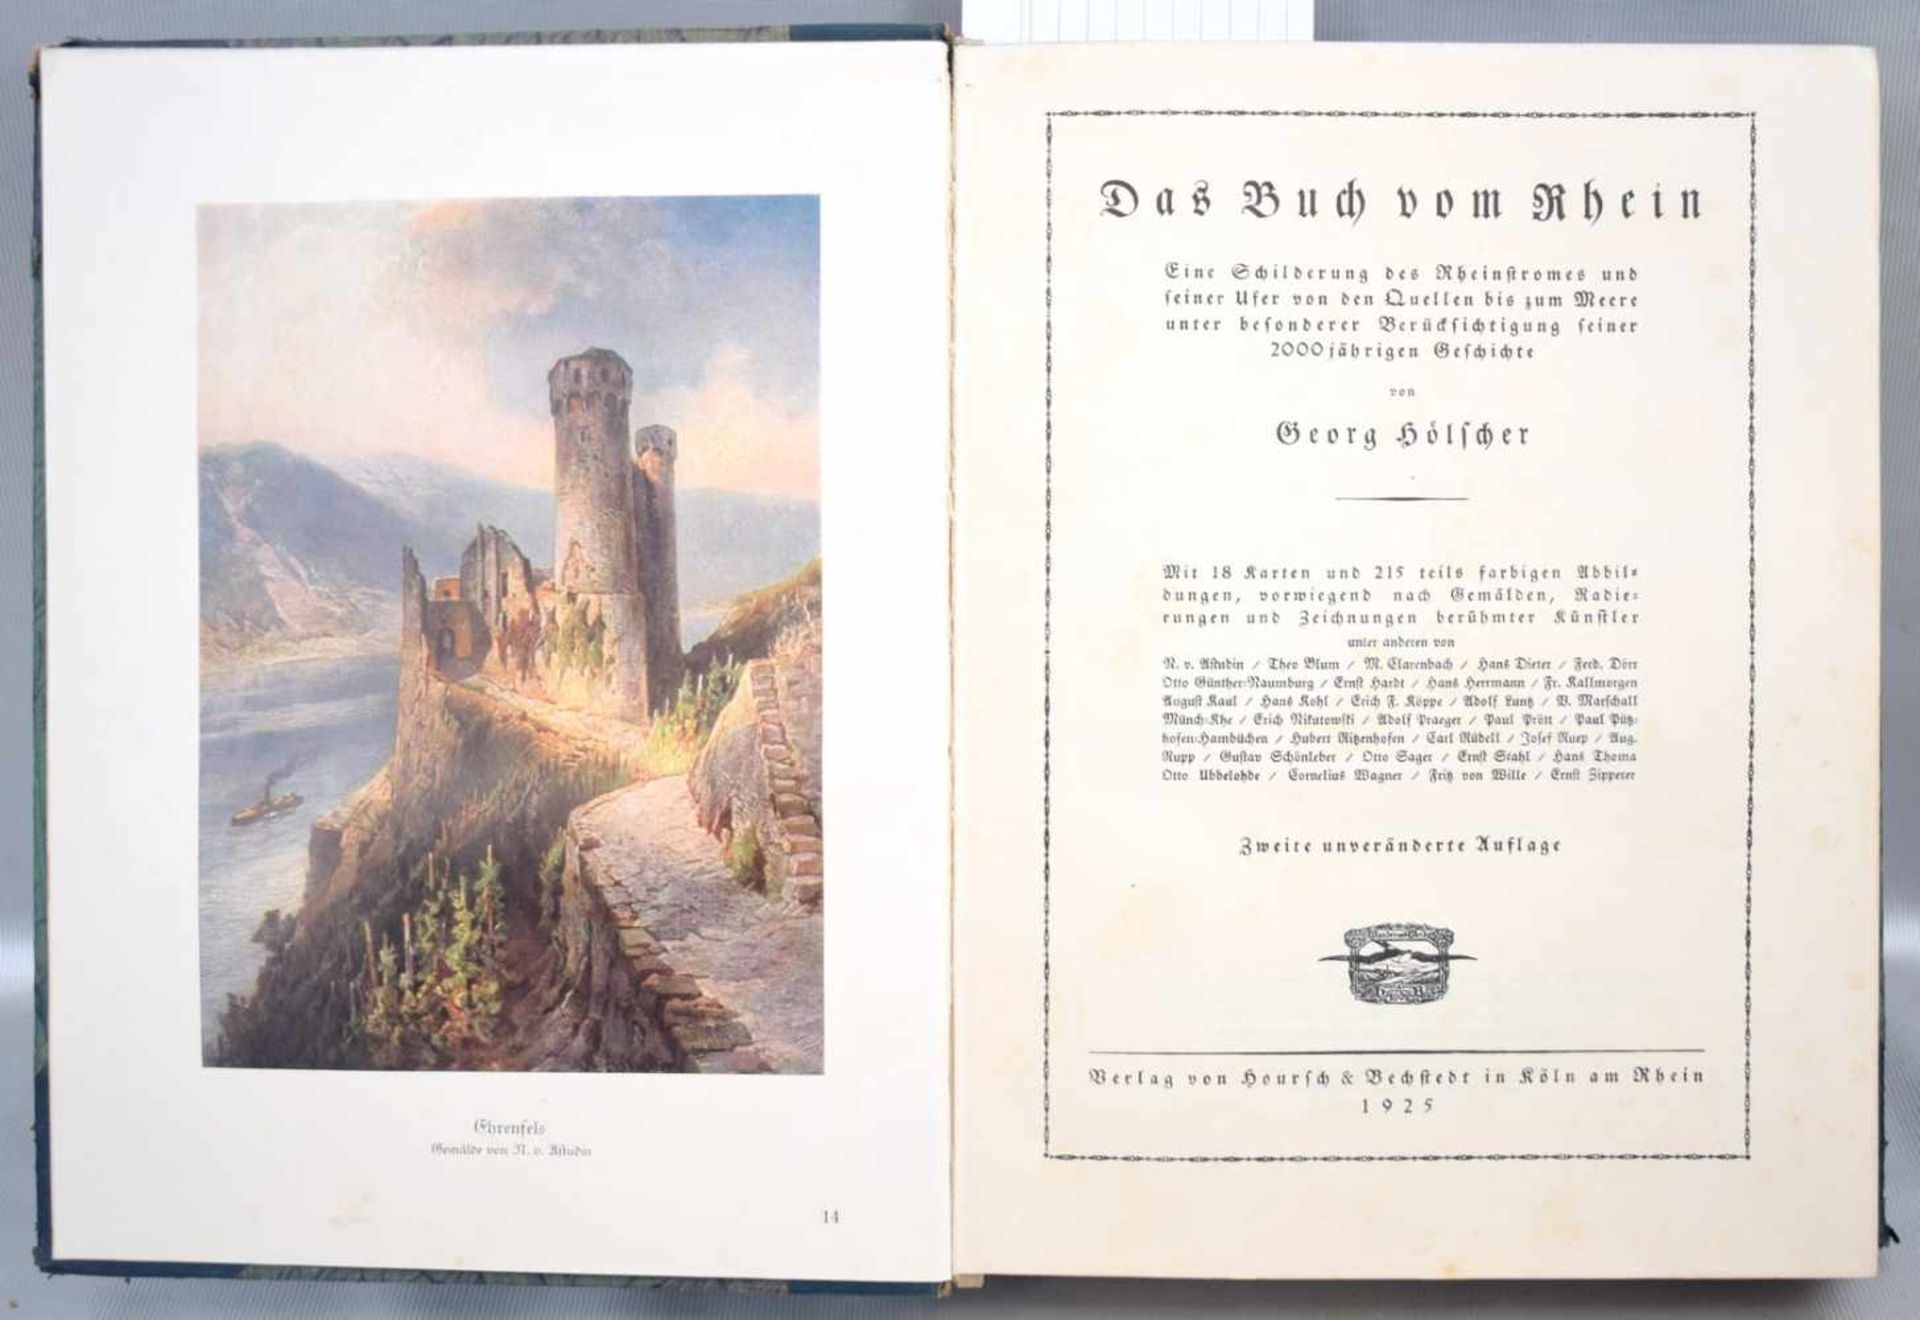 Das Buch vom RheinHerausgeber Georg Hölfcher, 1925